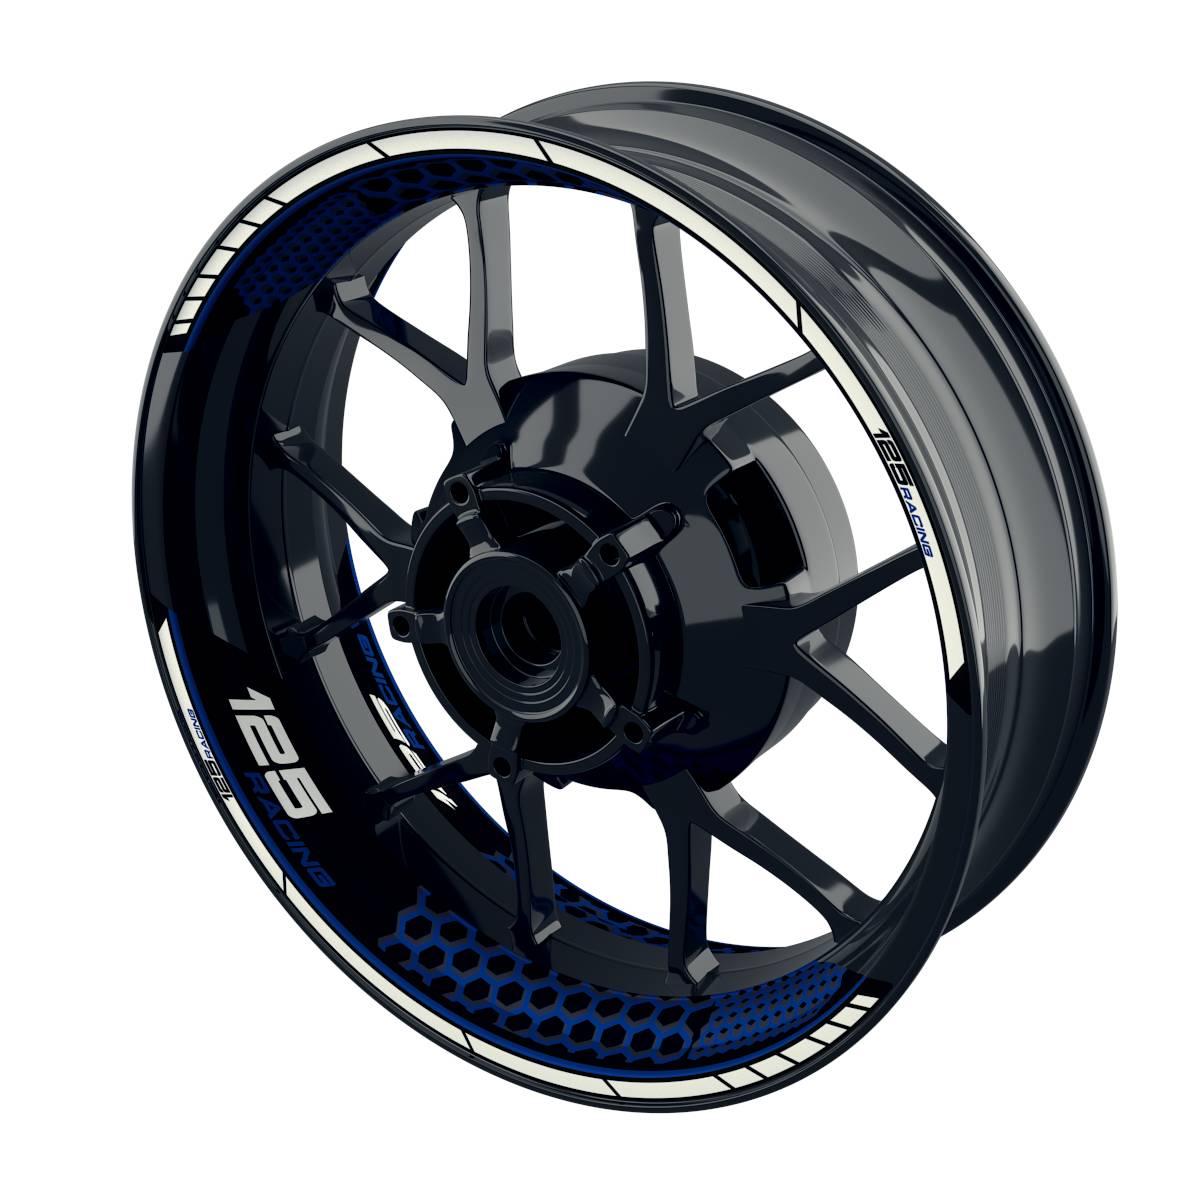 Racing 125 Hexagon Rim Decals Wheelsticker Premium splitted